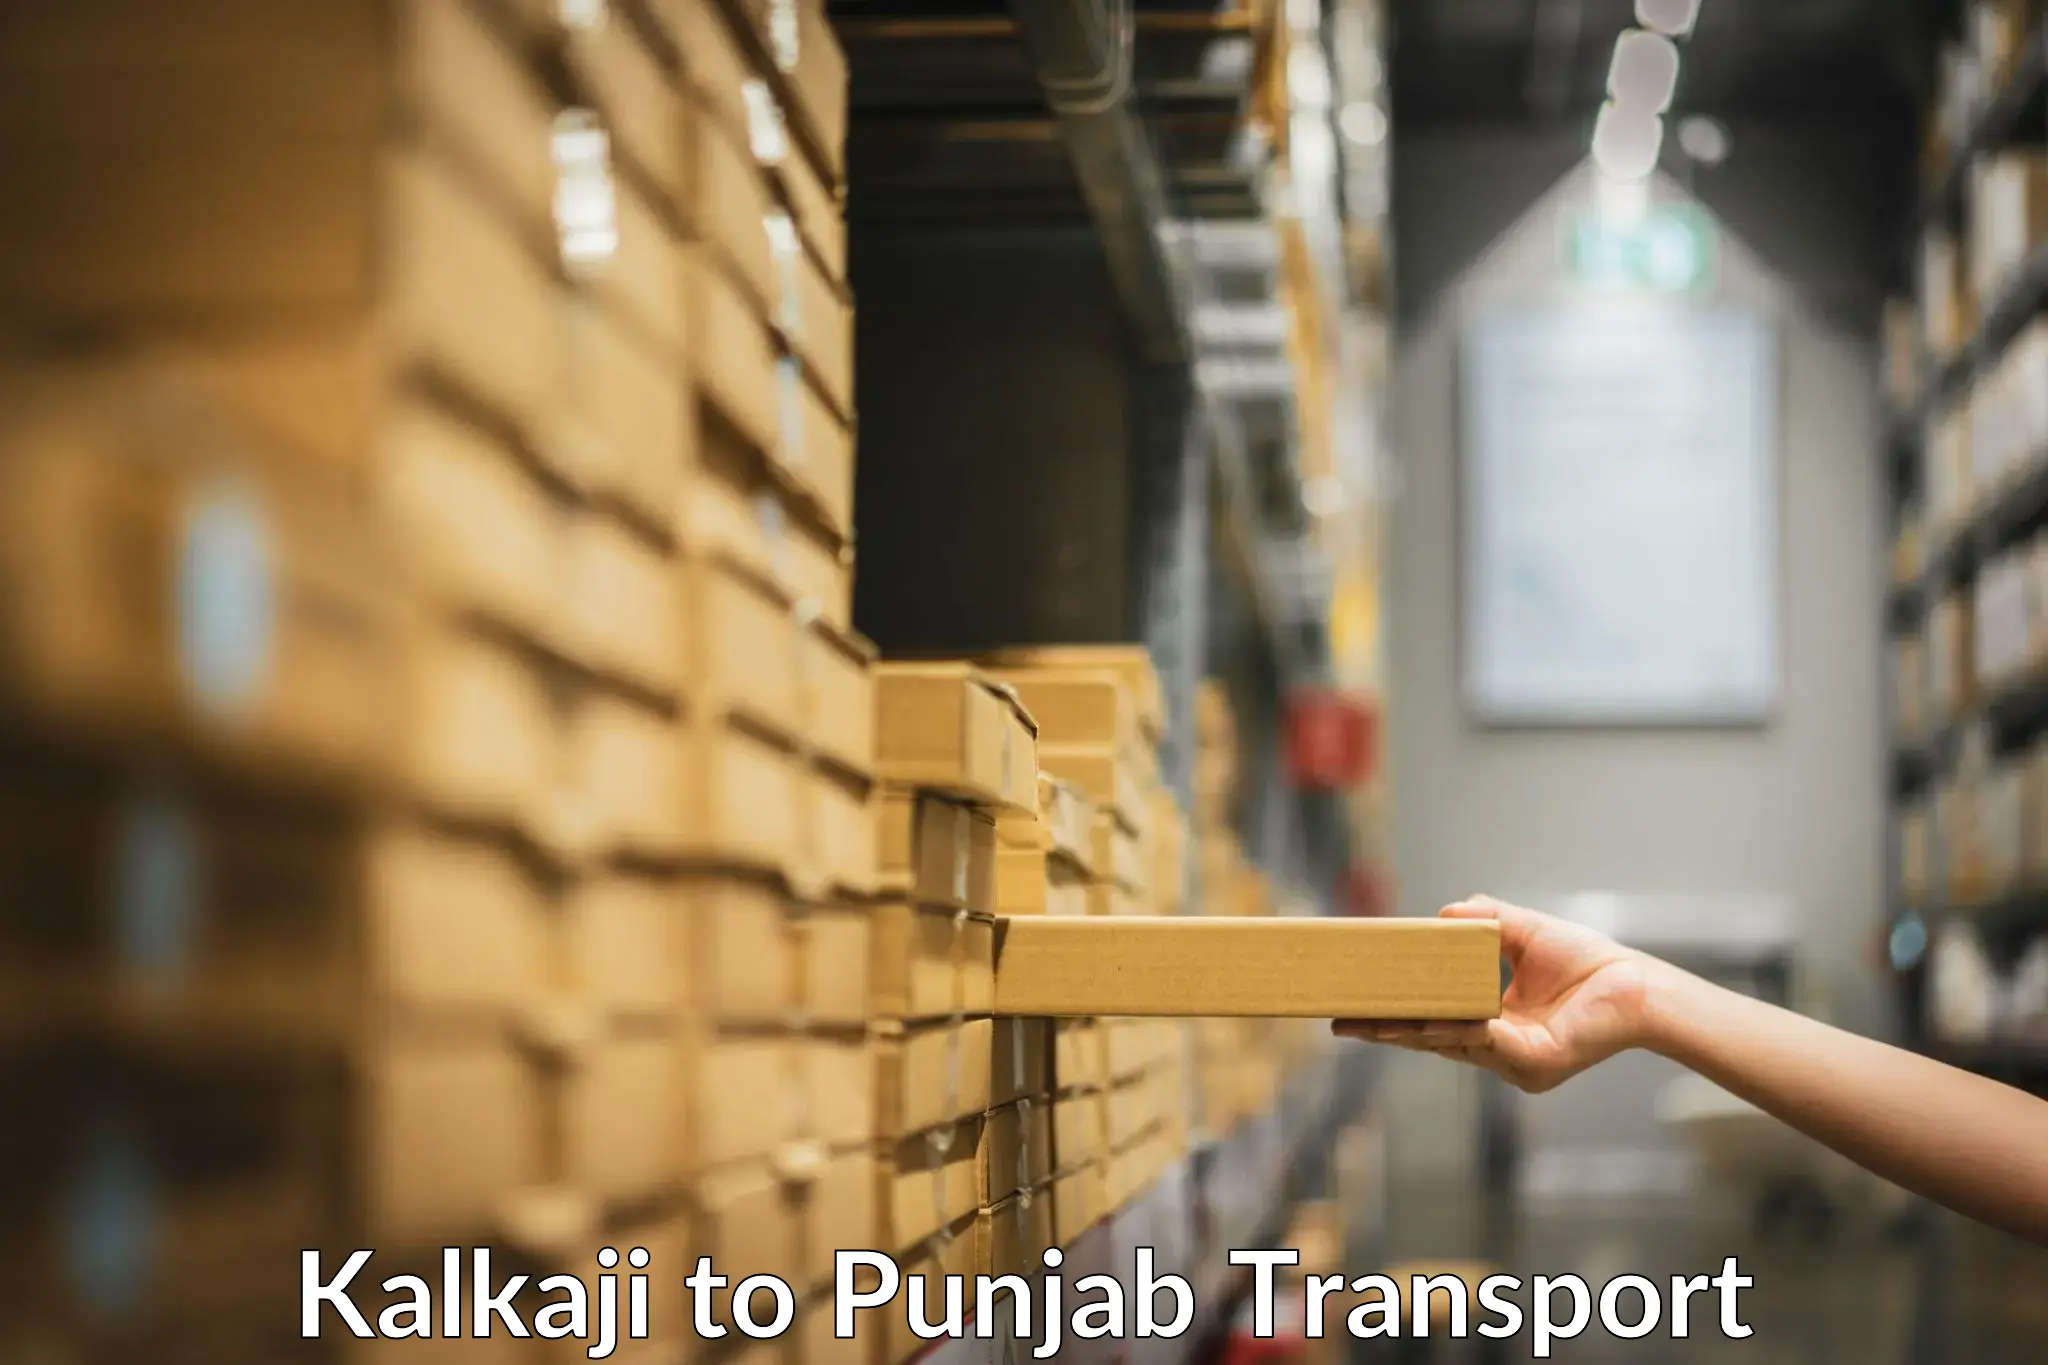 Transport in sharing Kalkaji to Jalalabad